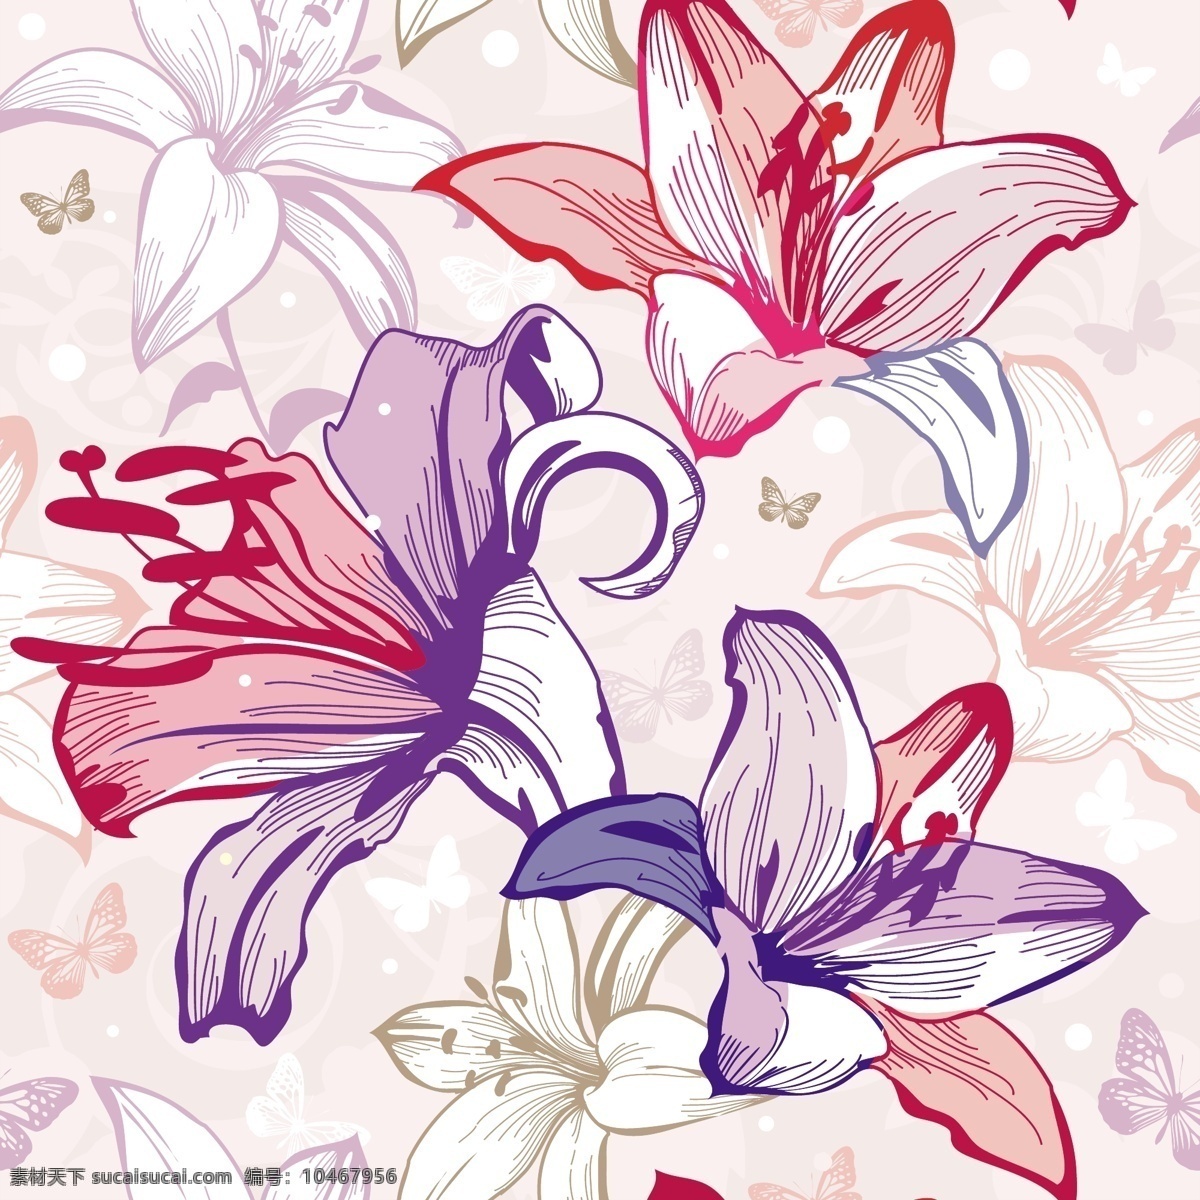 印花 面料 底纹 服装设计 花卉 平面设计 矢量图案 其他矢量图